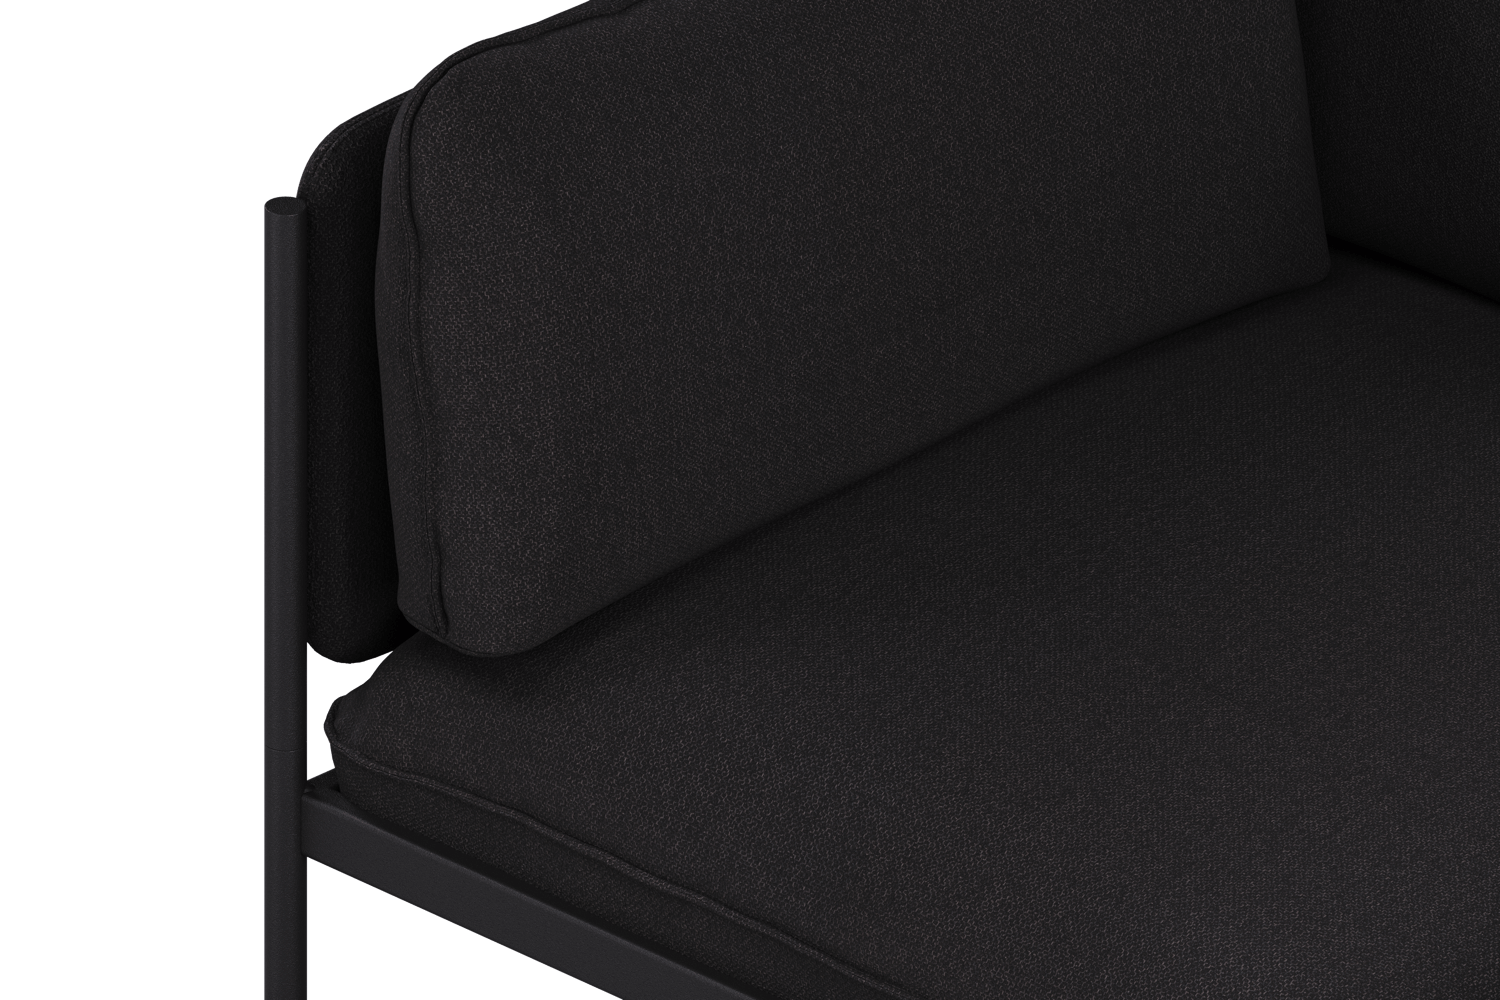 Toom Modular Sofa 4-Sitzer Konfiguration 2a in Graphite Black  präsentiert im Onlineshop von KAQTU Design AG. 4er Sofa ist von Noo.ma